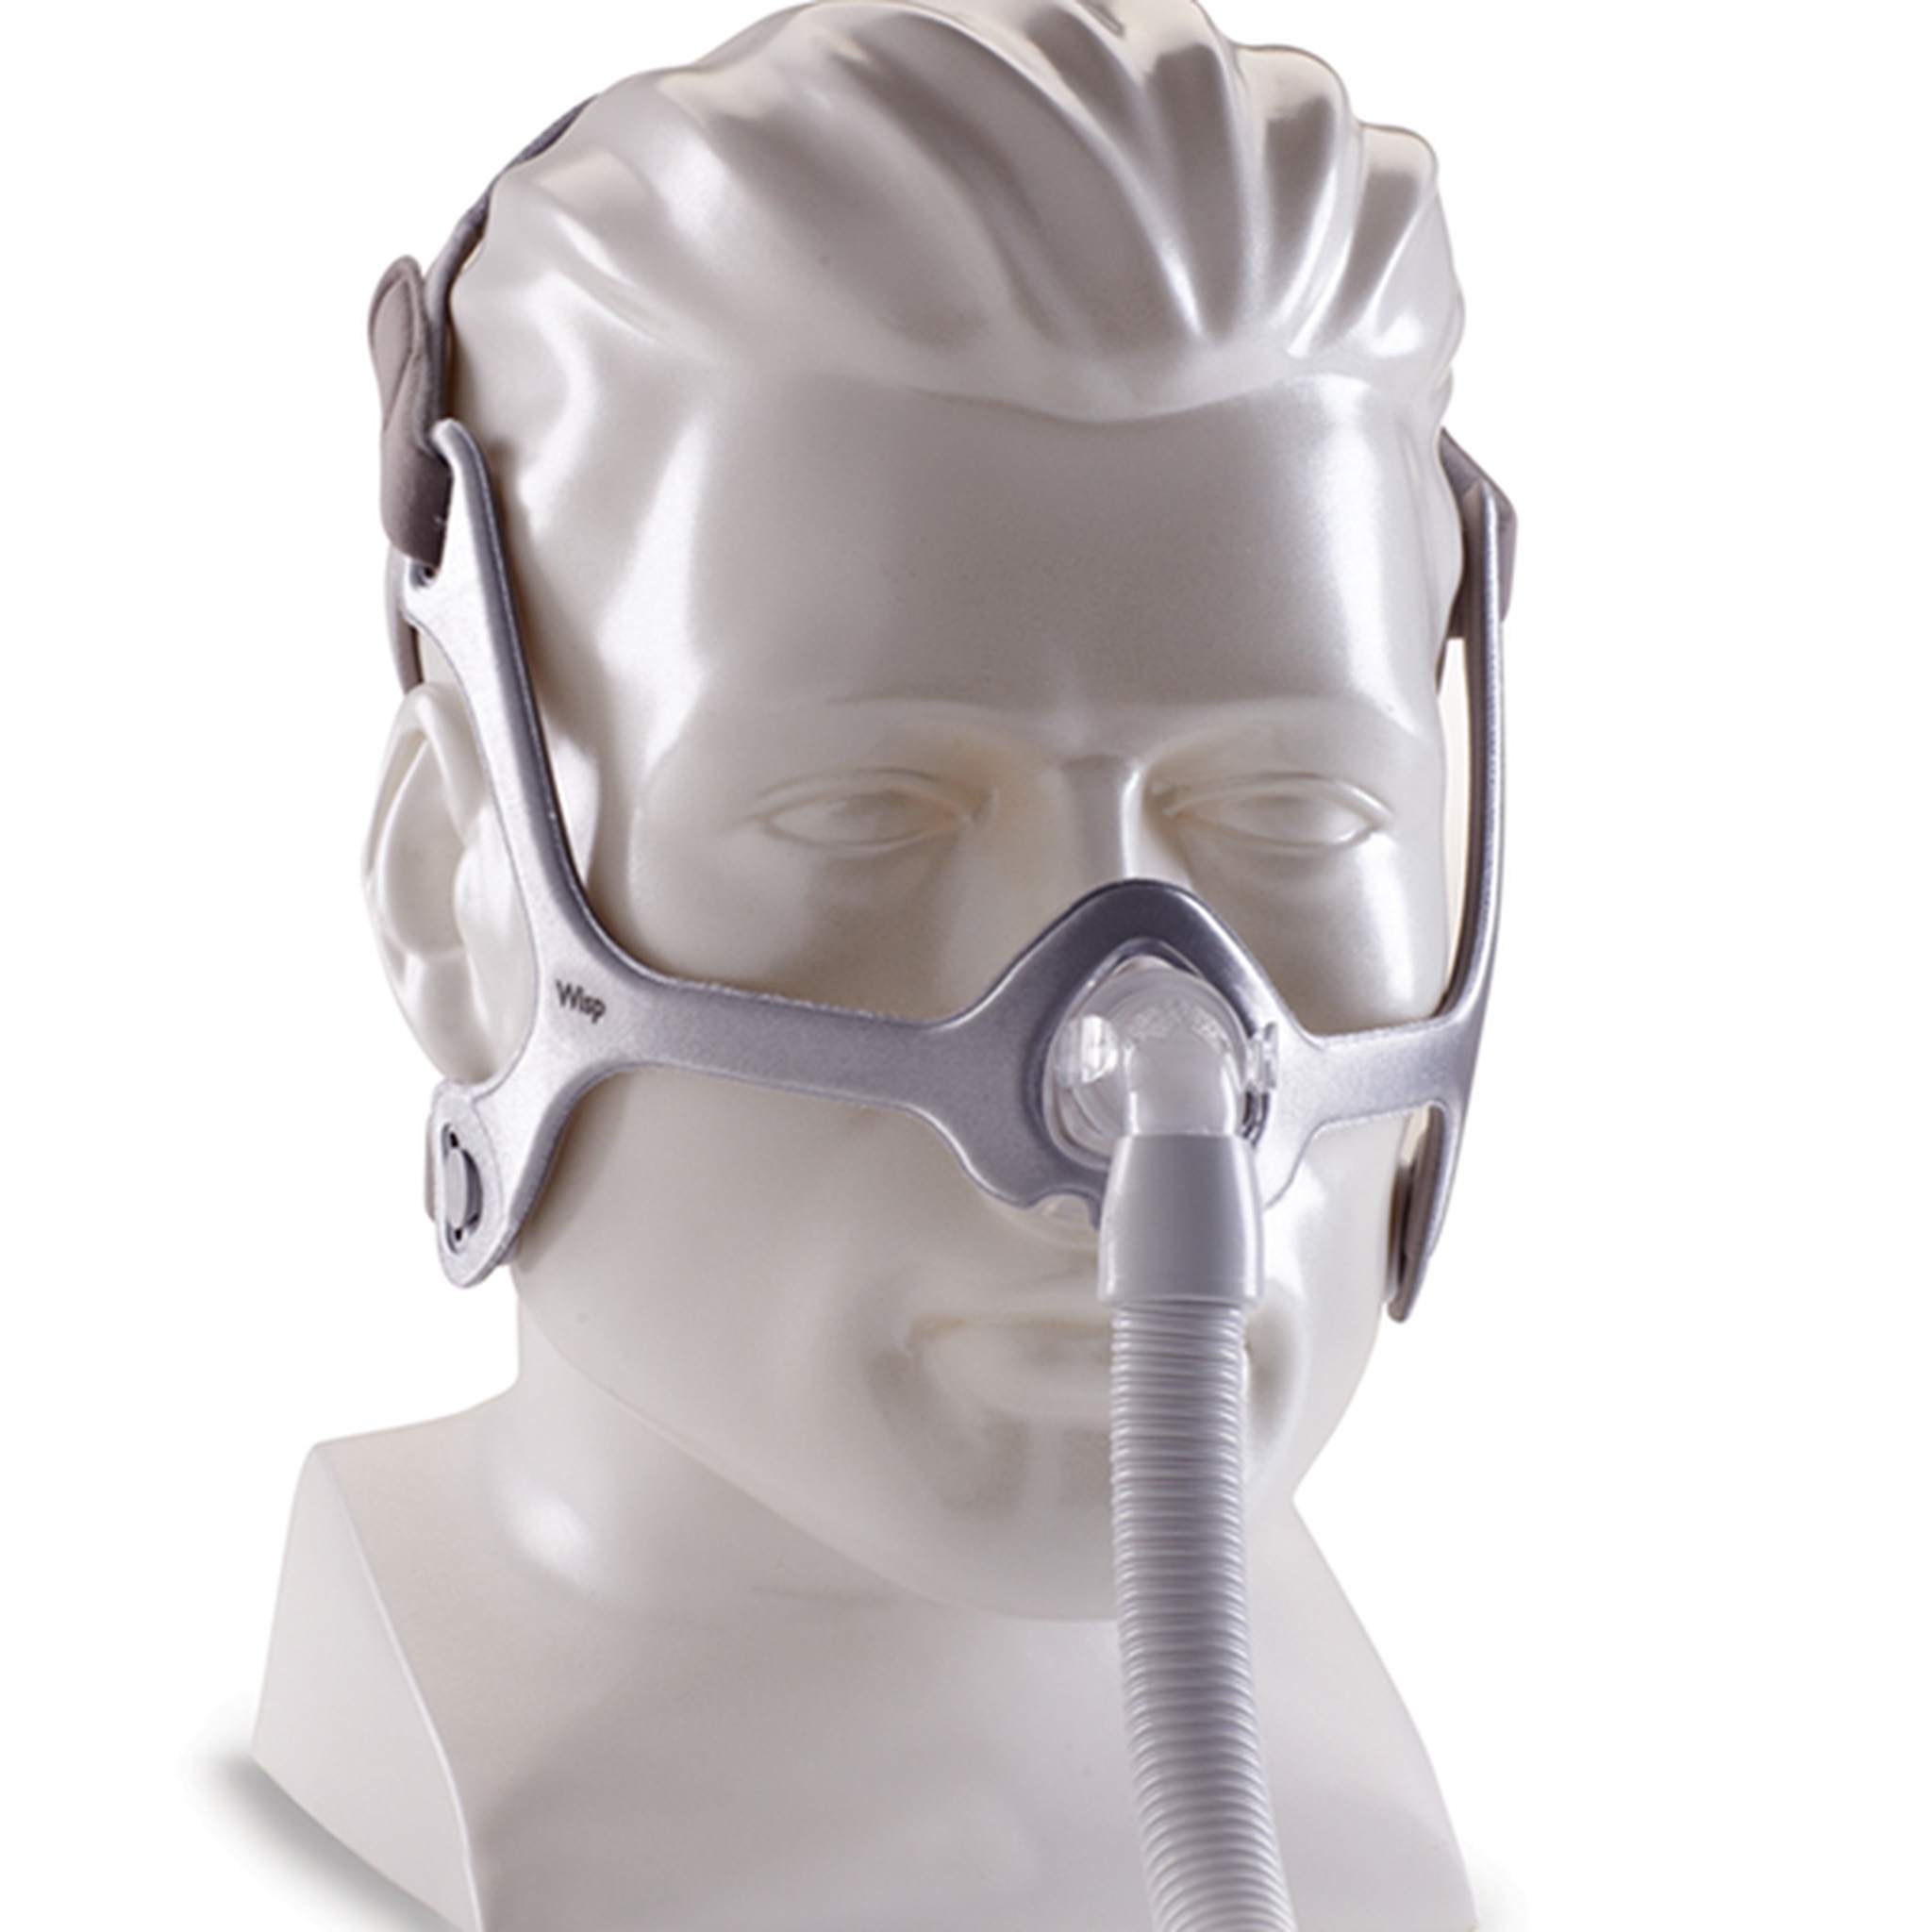 Mascarilla CPAP WISP | Mascarilla nasal con marco de silicona de Philips  Respironics